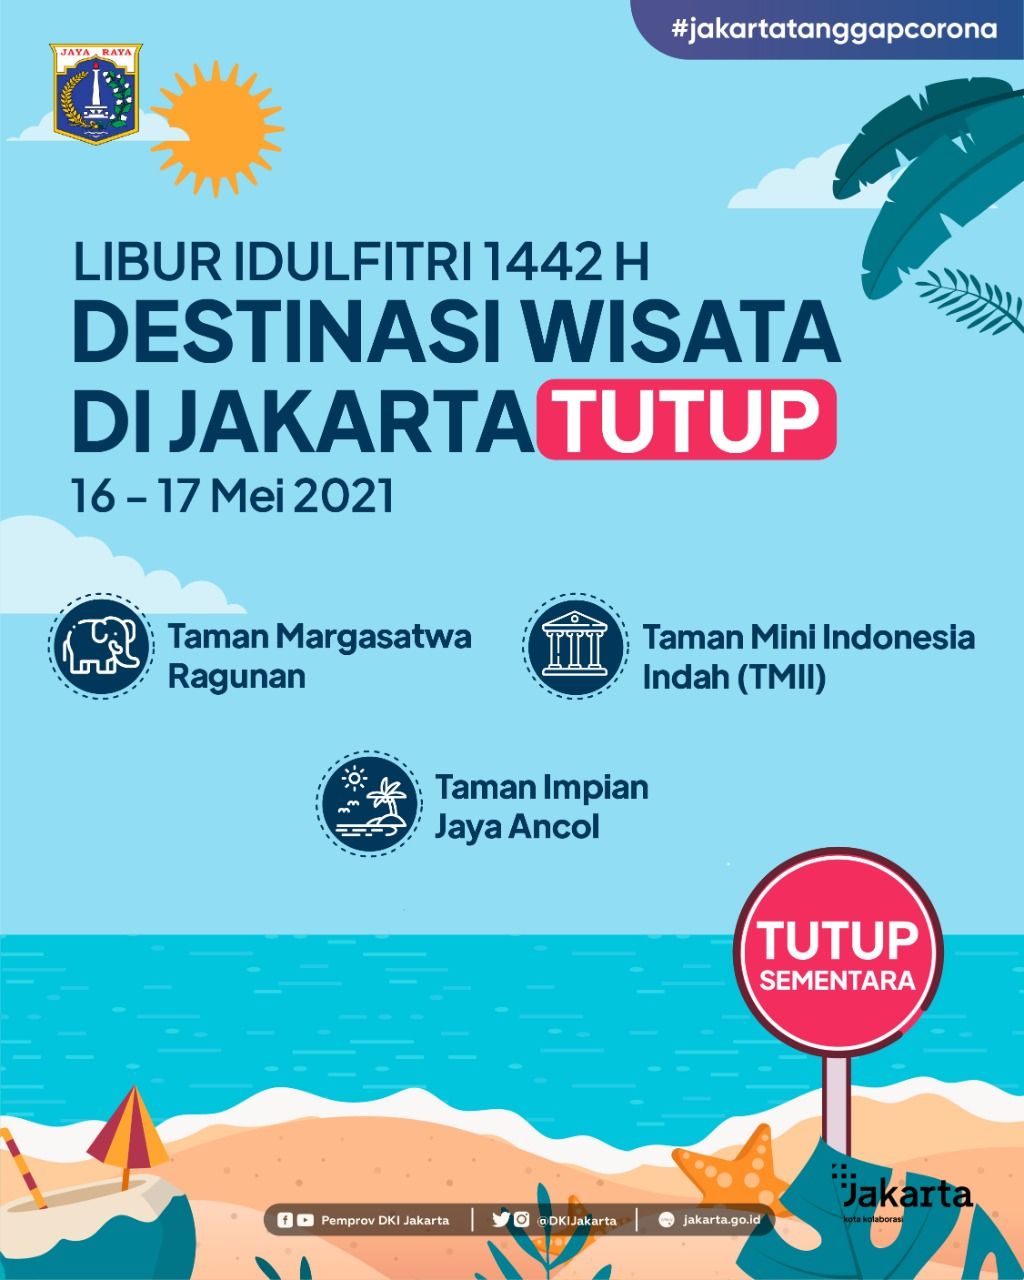 Pengumuman Penutupan Sementara Destinasi Wisata di Jakarta. (ist)